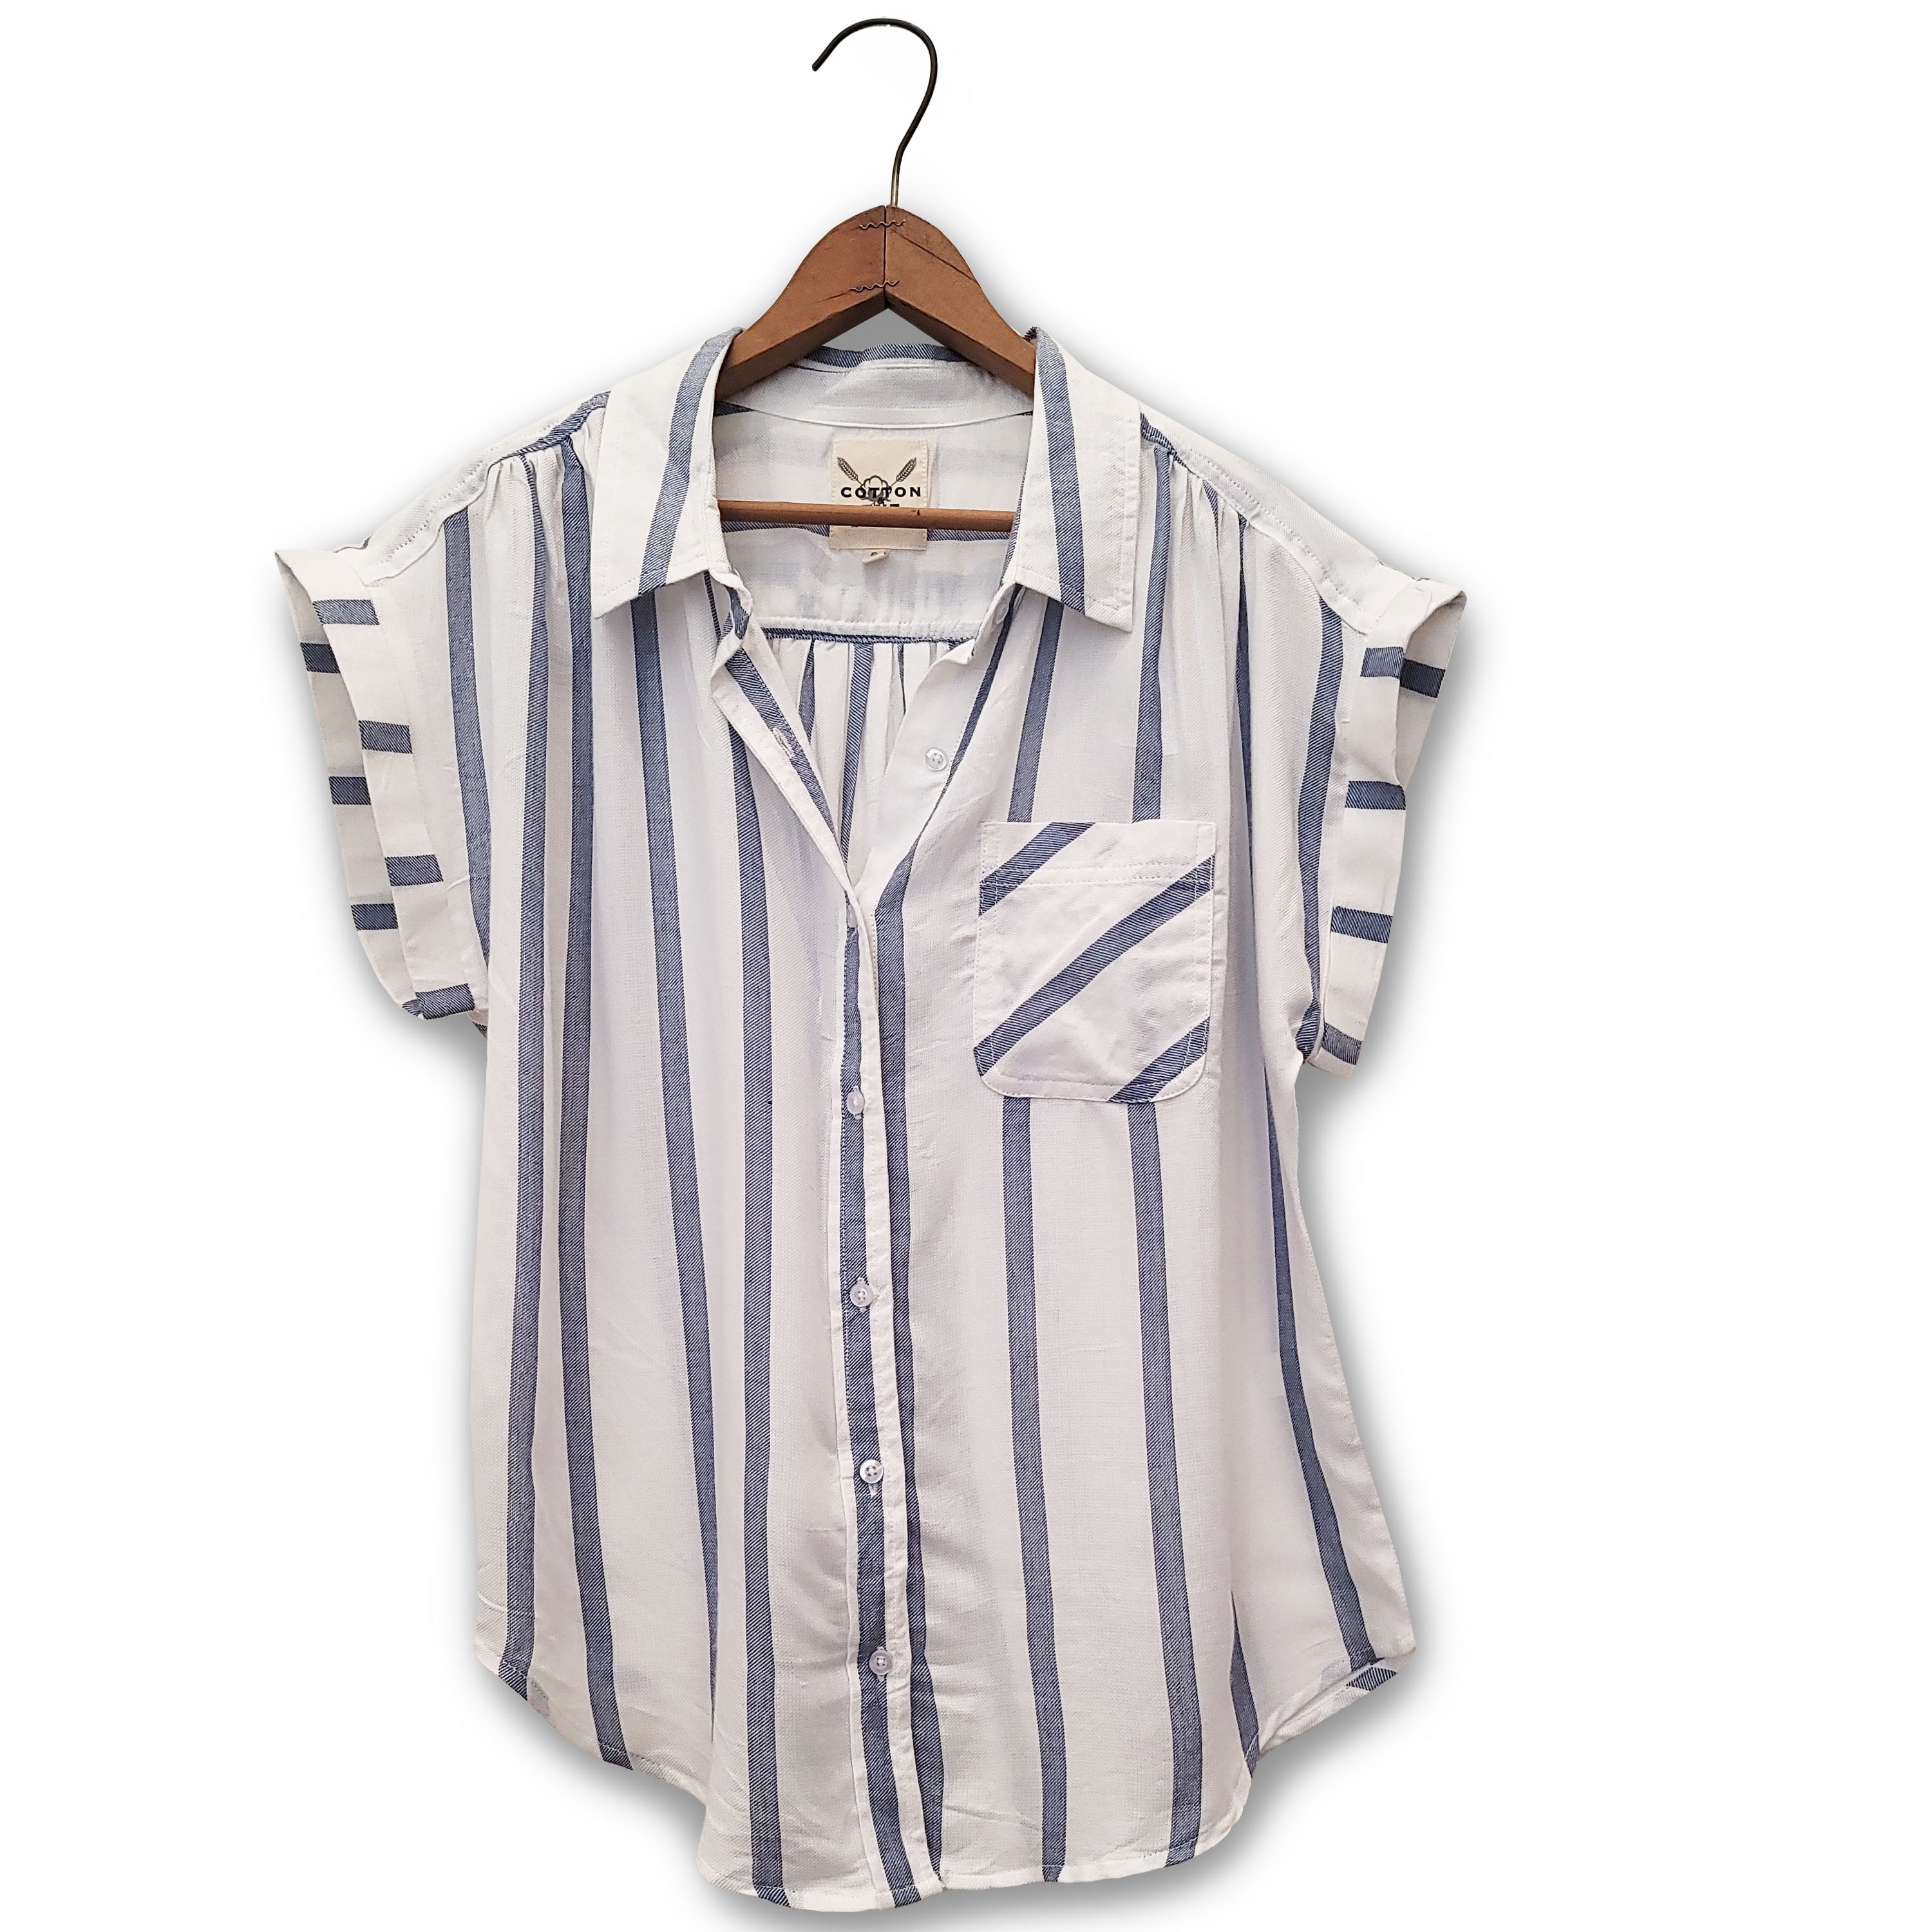 Stripe Shirt by Cotton & Rye #CRW931B White/Blue